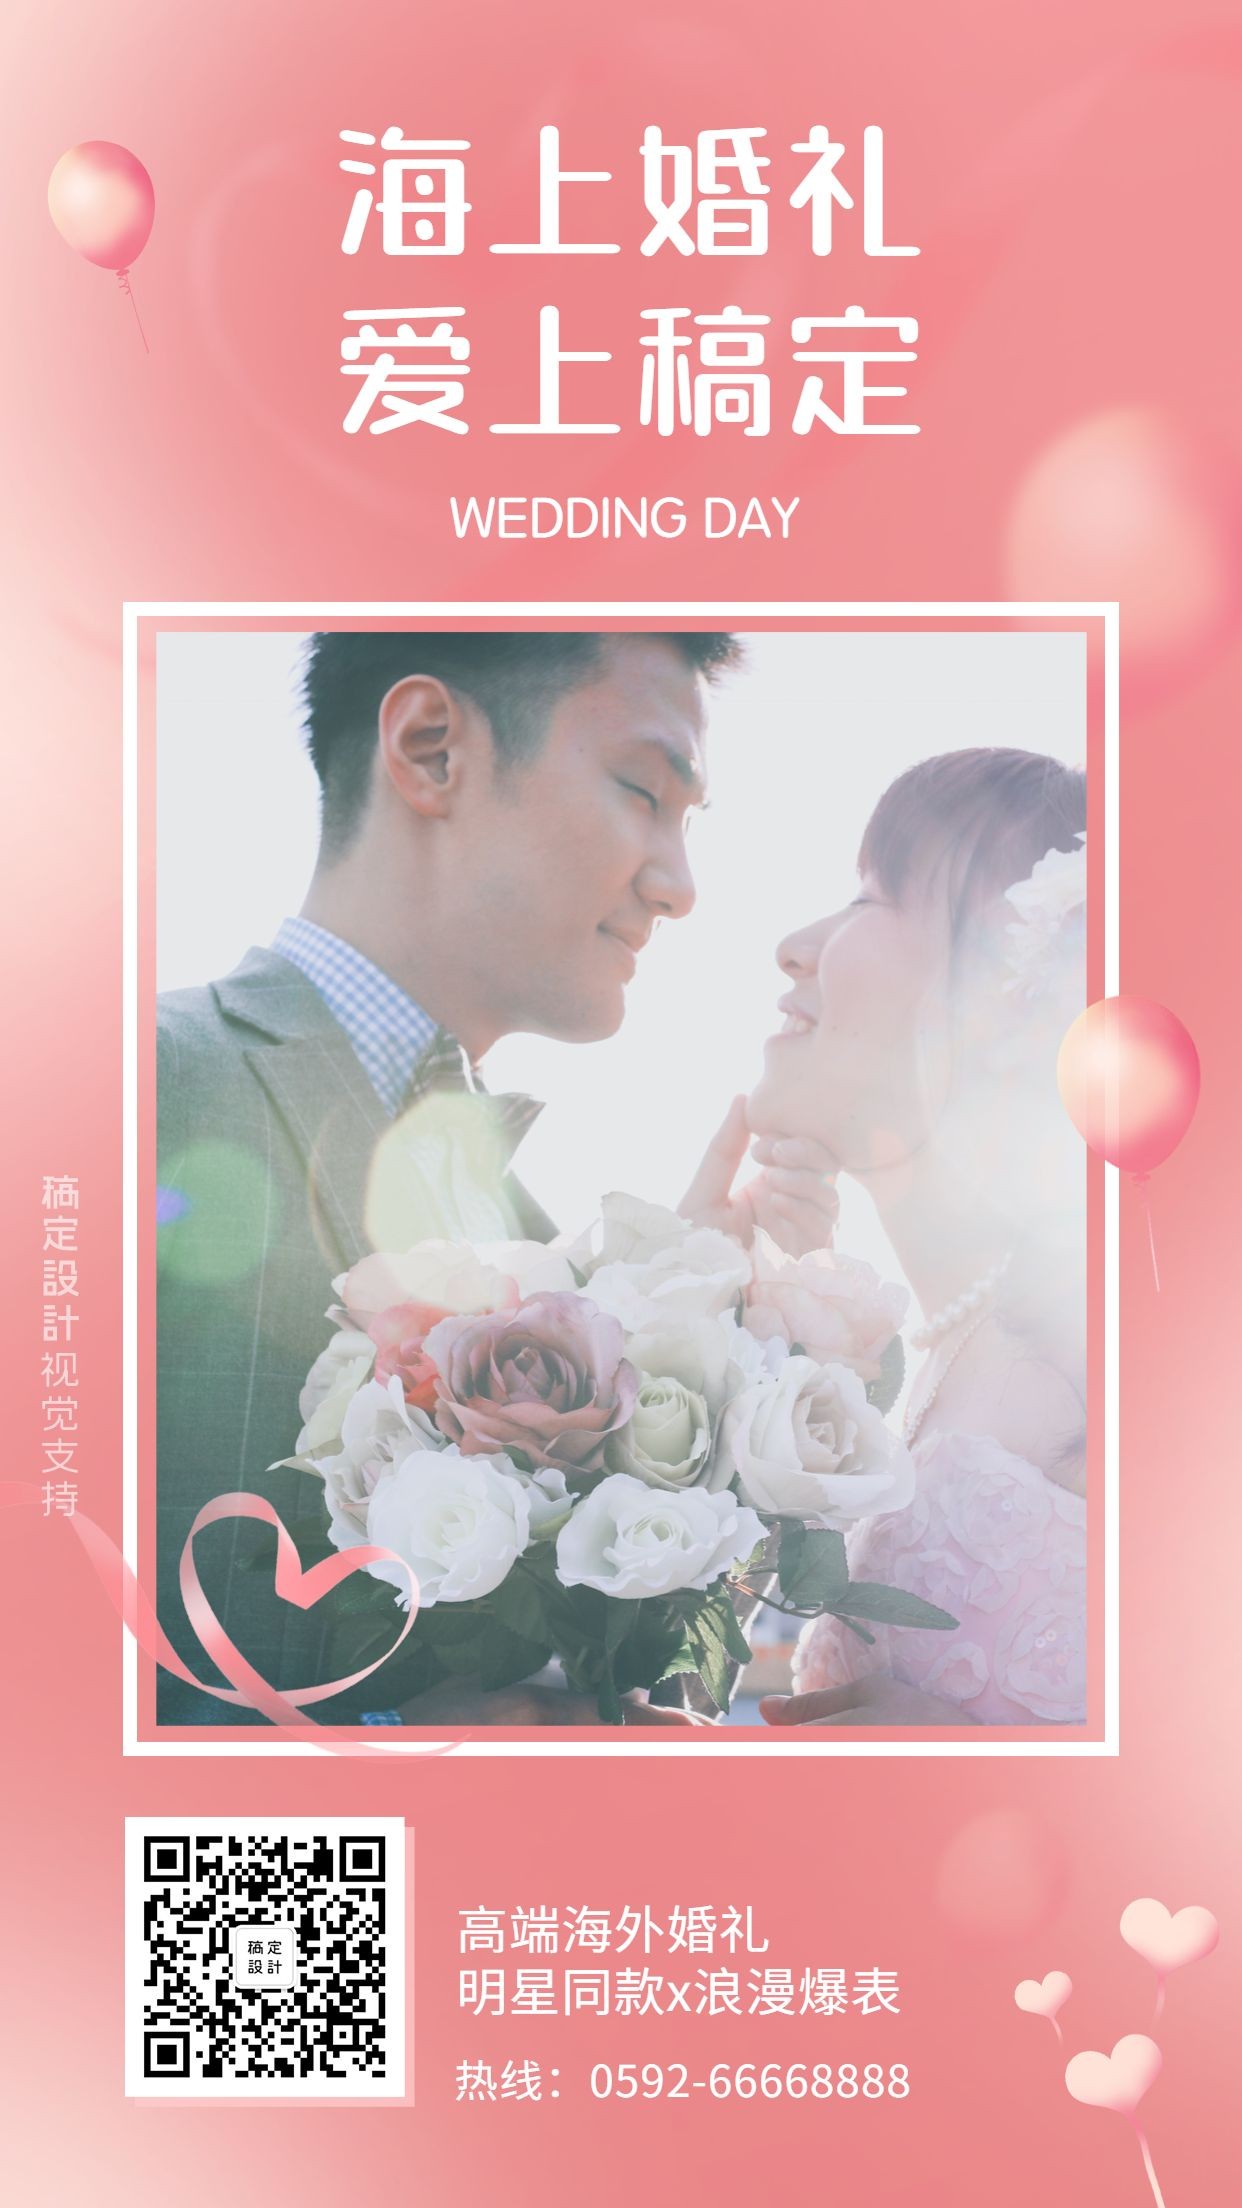 婚礼策划机构海外婚礼业务宣传引流海报